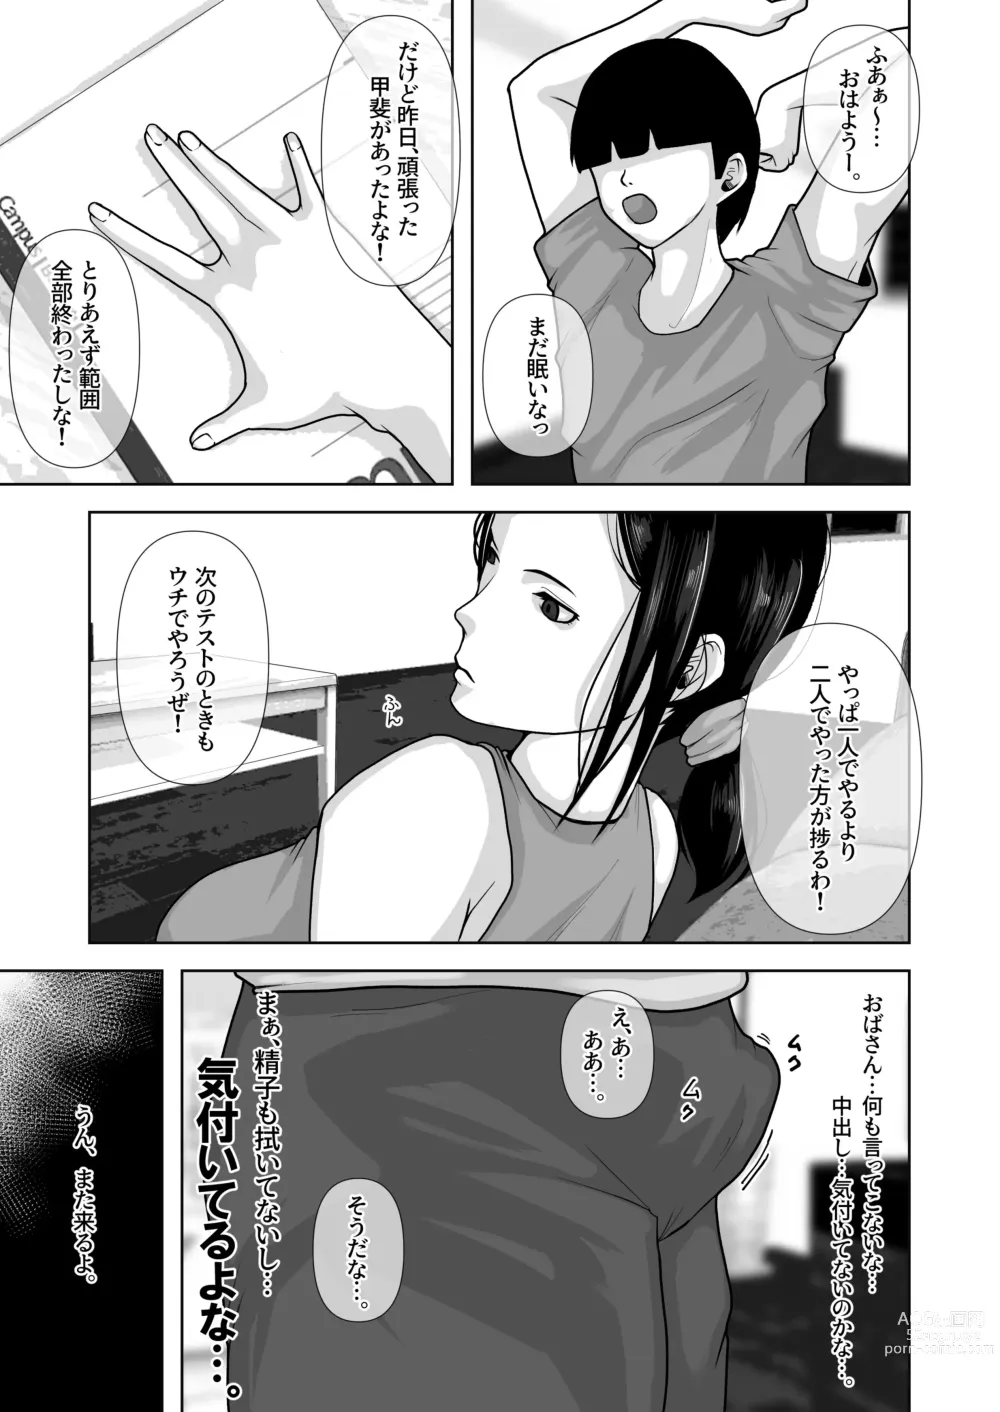 Page 48 of doujinshi Tomodachi no Okaa-san o Okazu ni Suru.